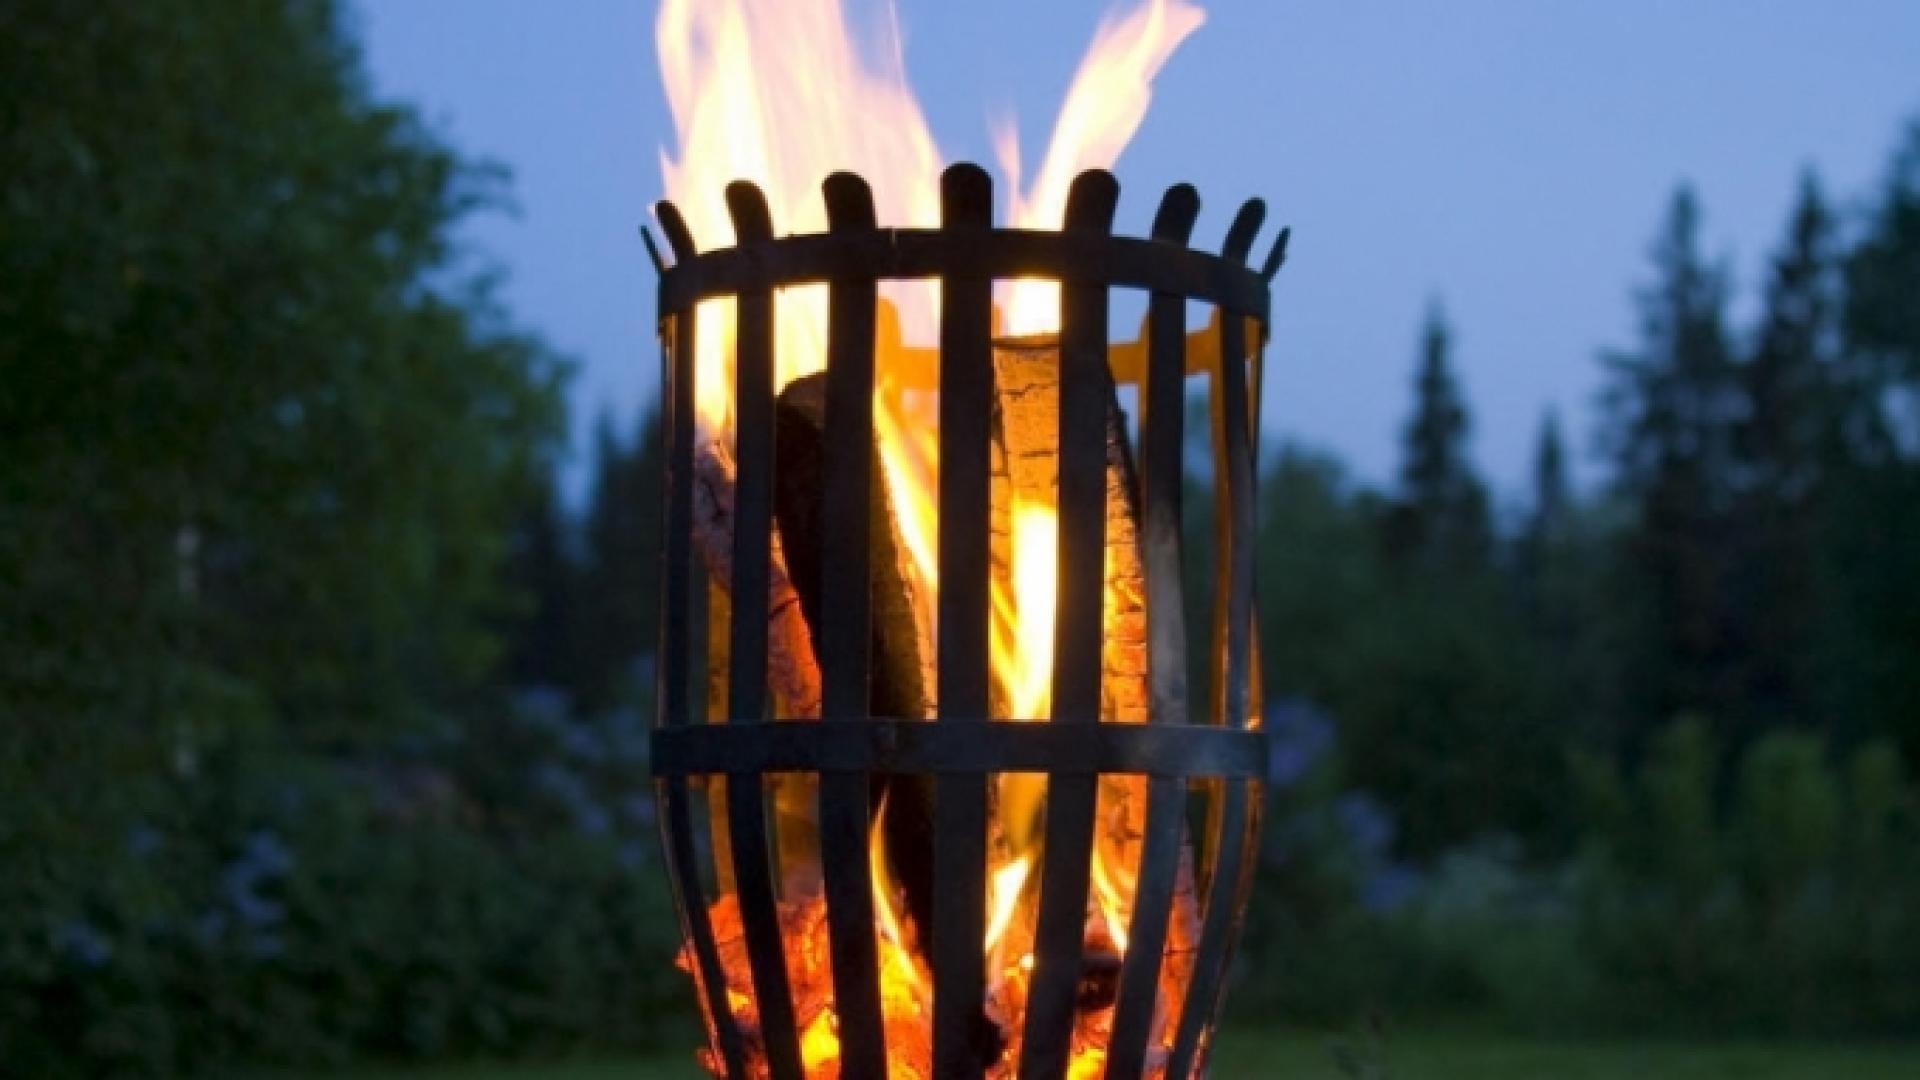 Fire basket Original